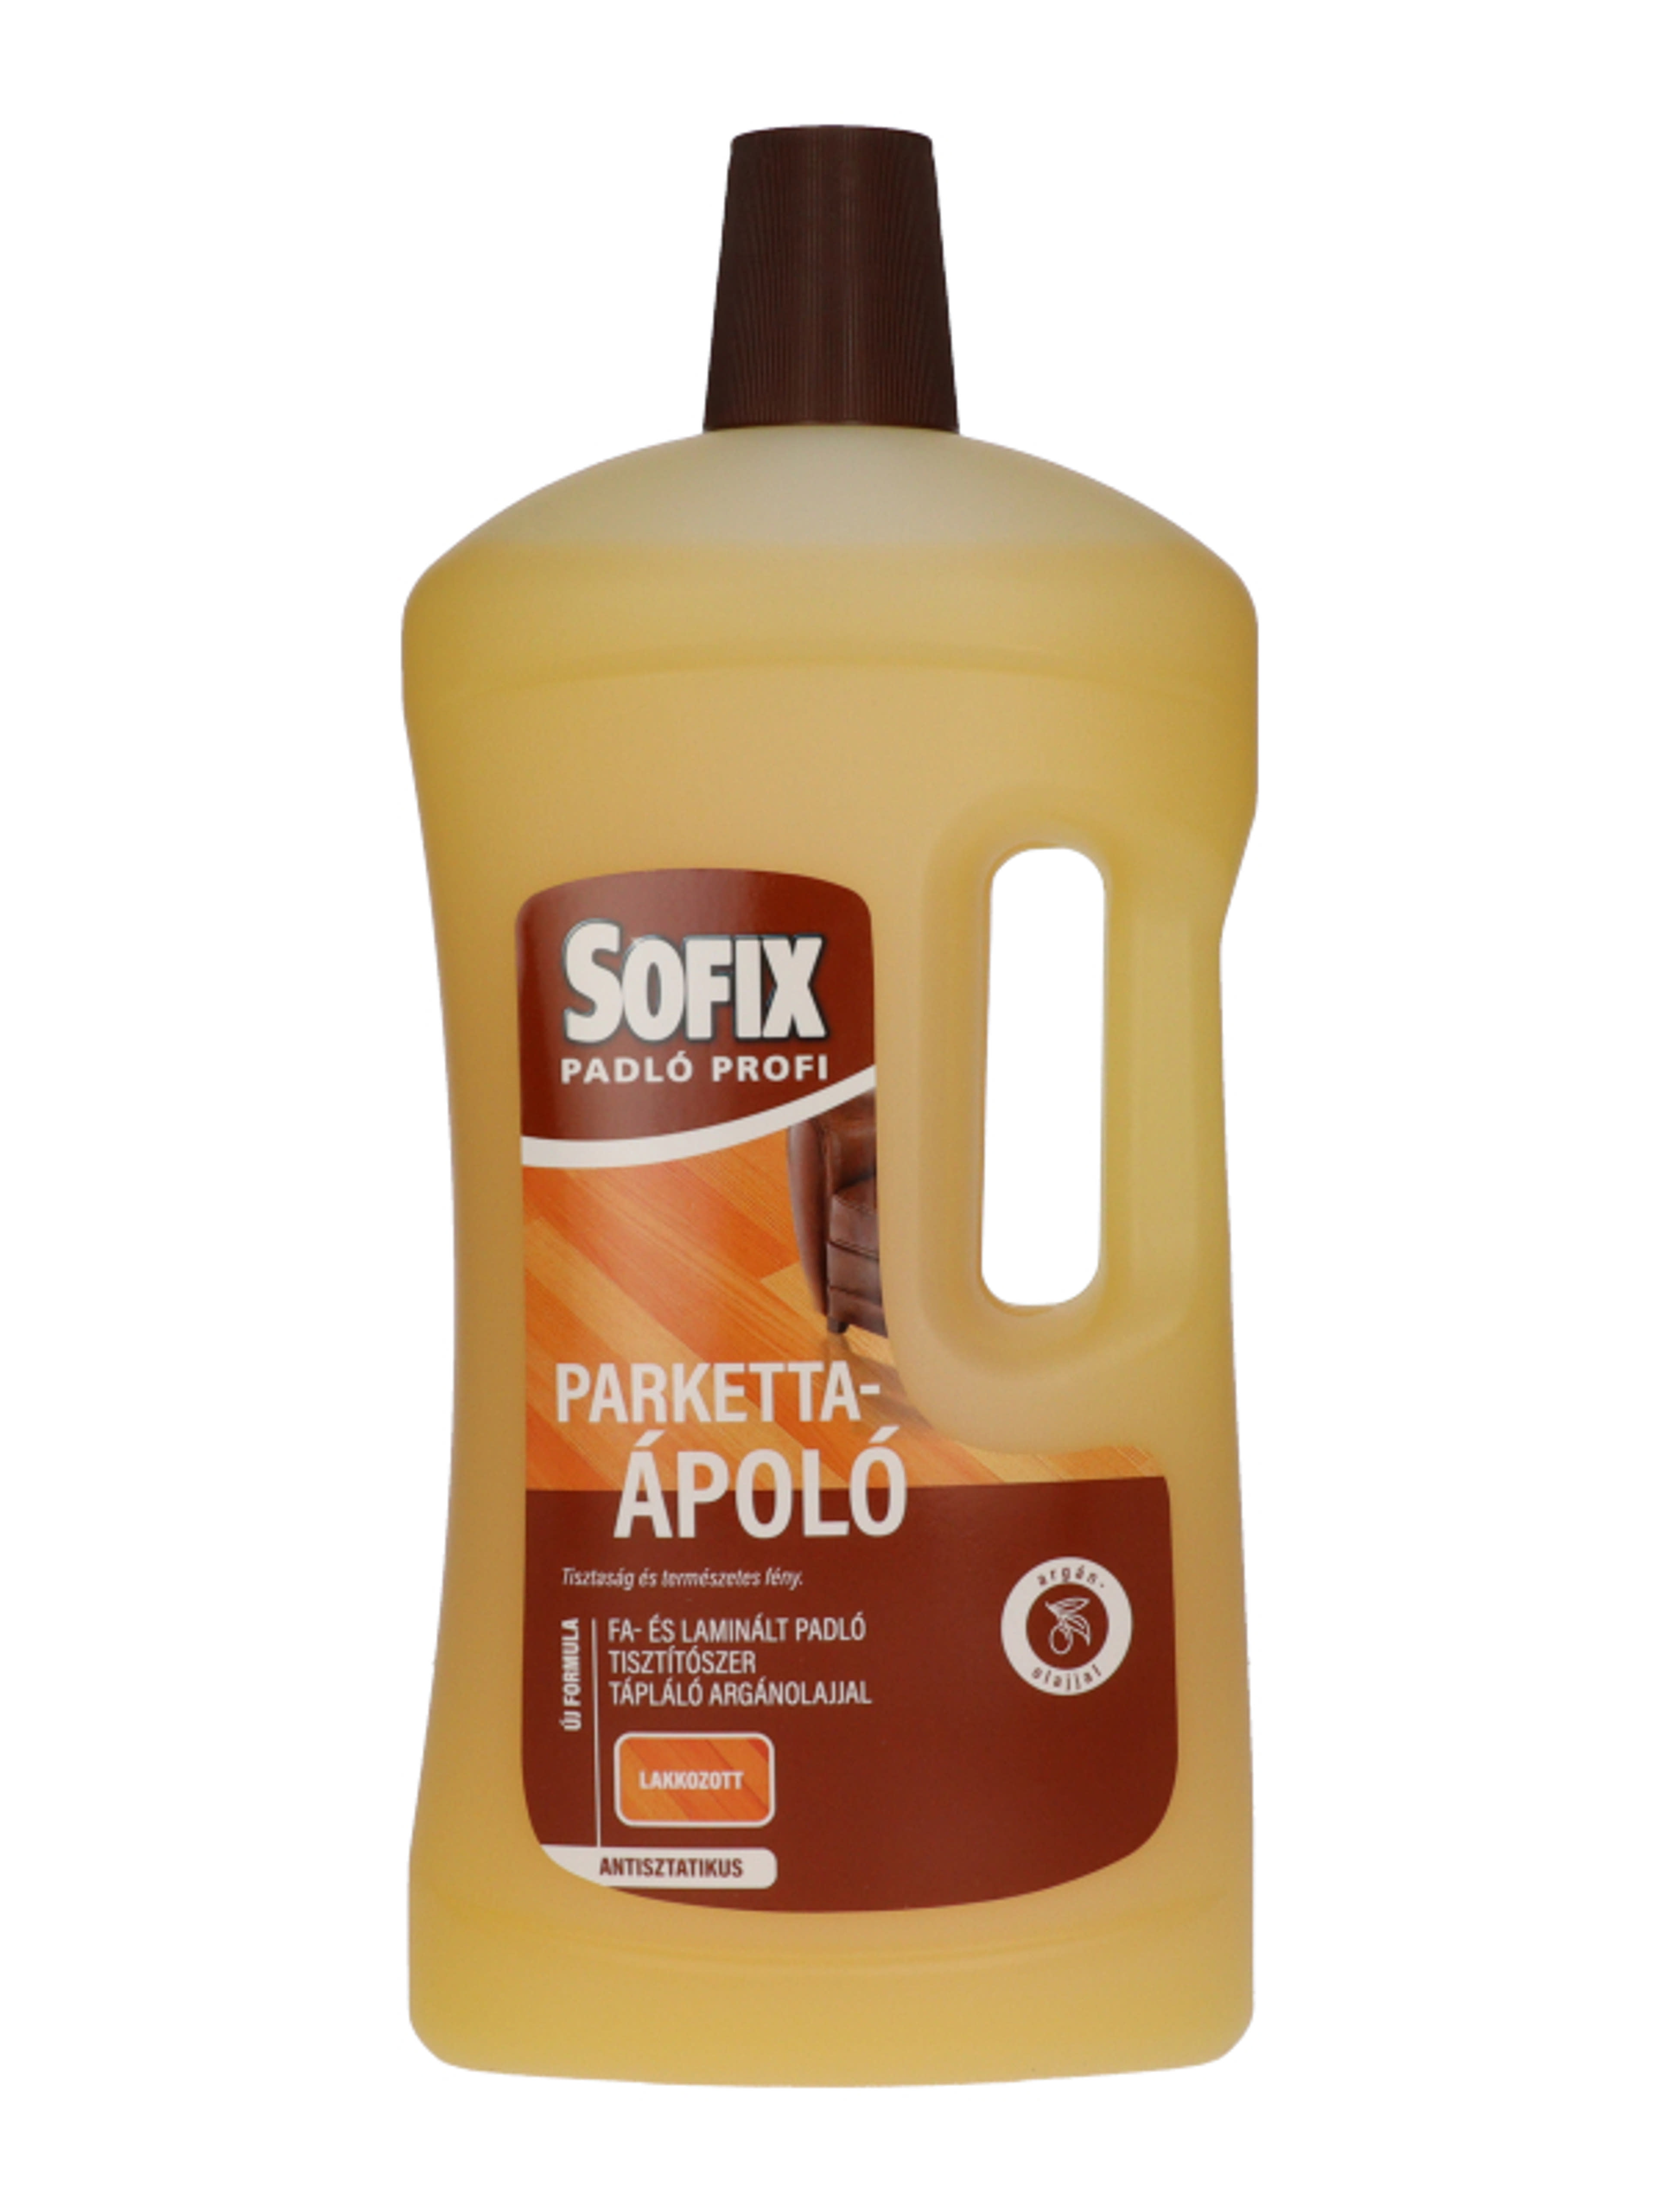 Sofix parkettaápoló argánolajjal - 1000 ml